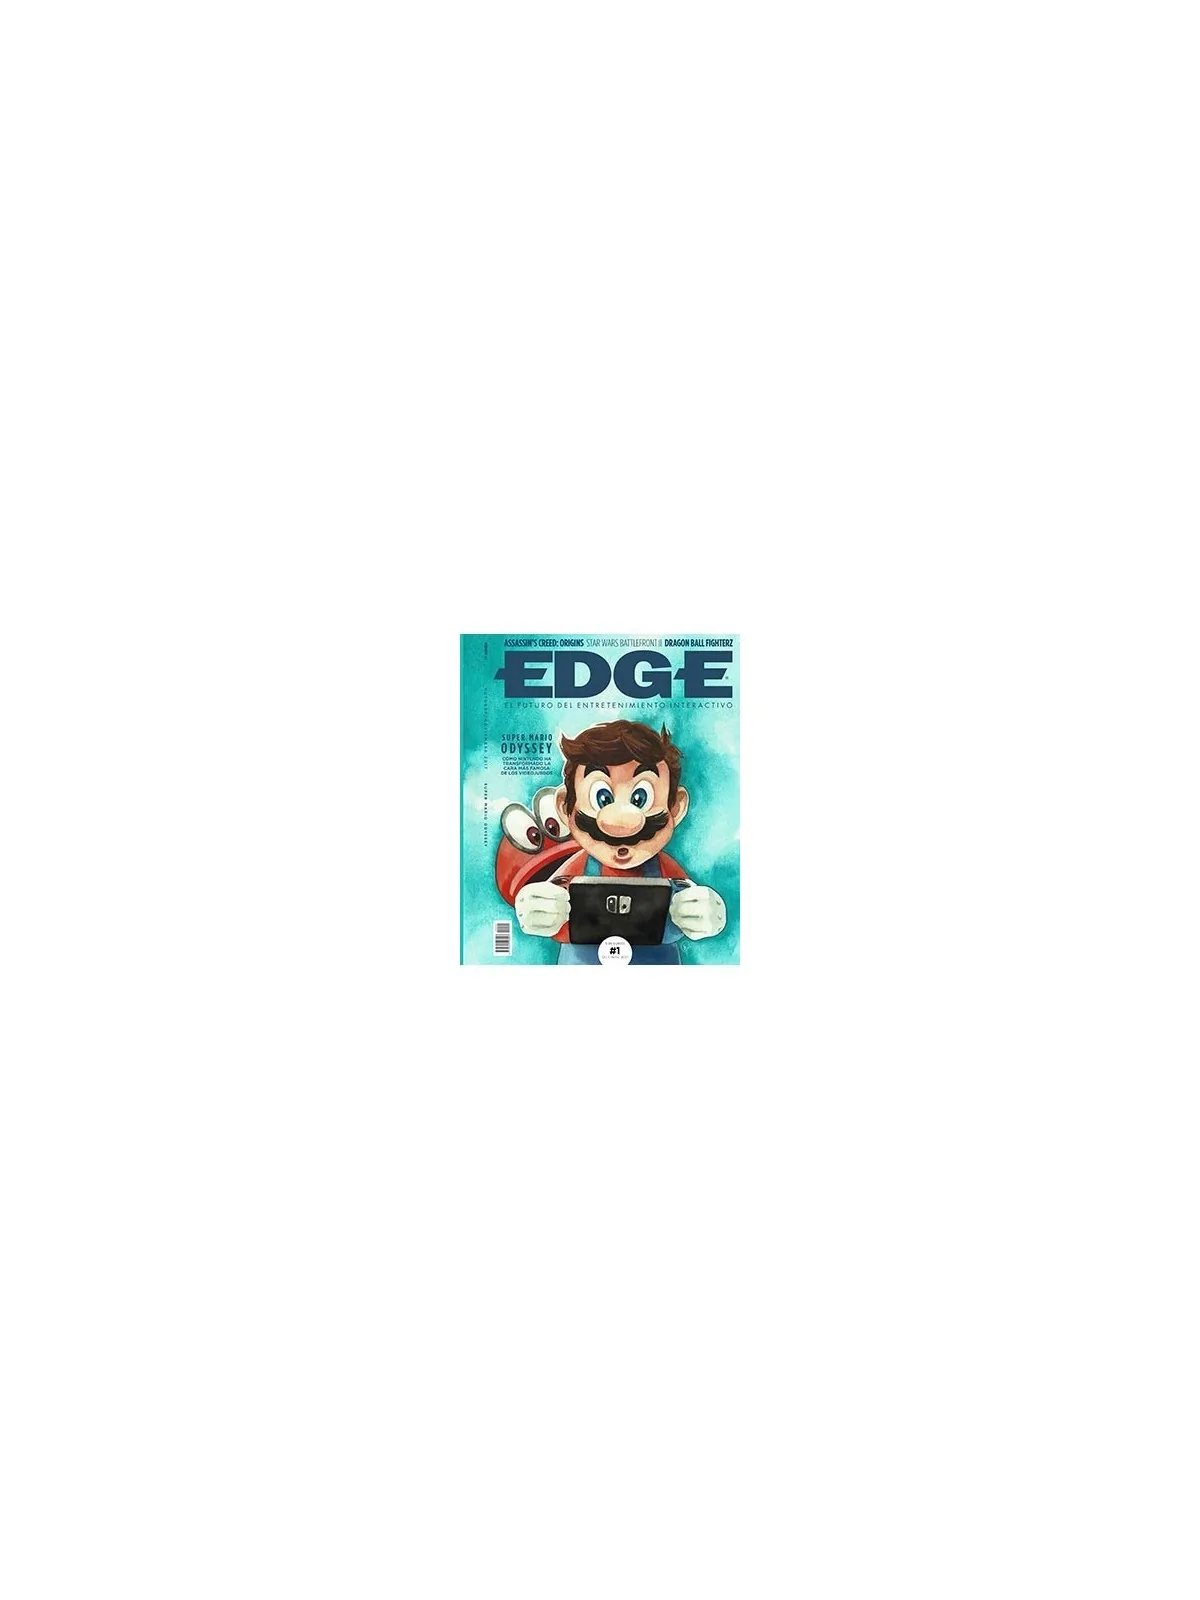 Comprar Revista Edge 01 barato al mejor precio 5,65 € de Panini Comics